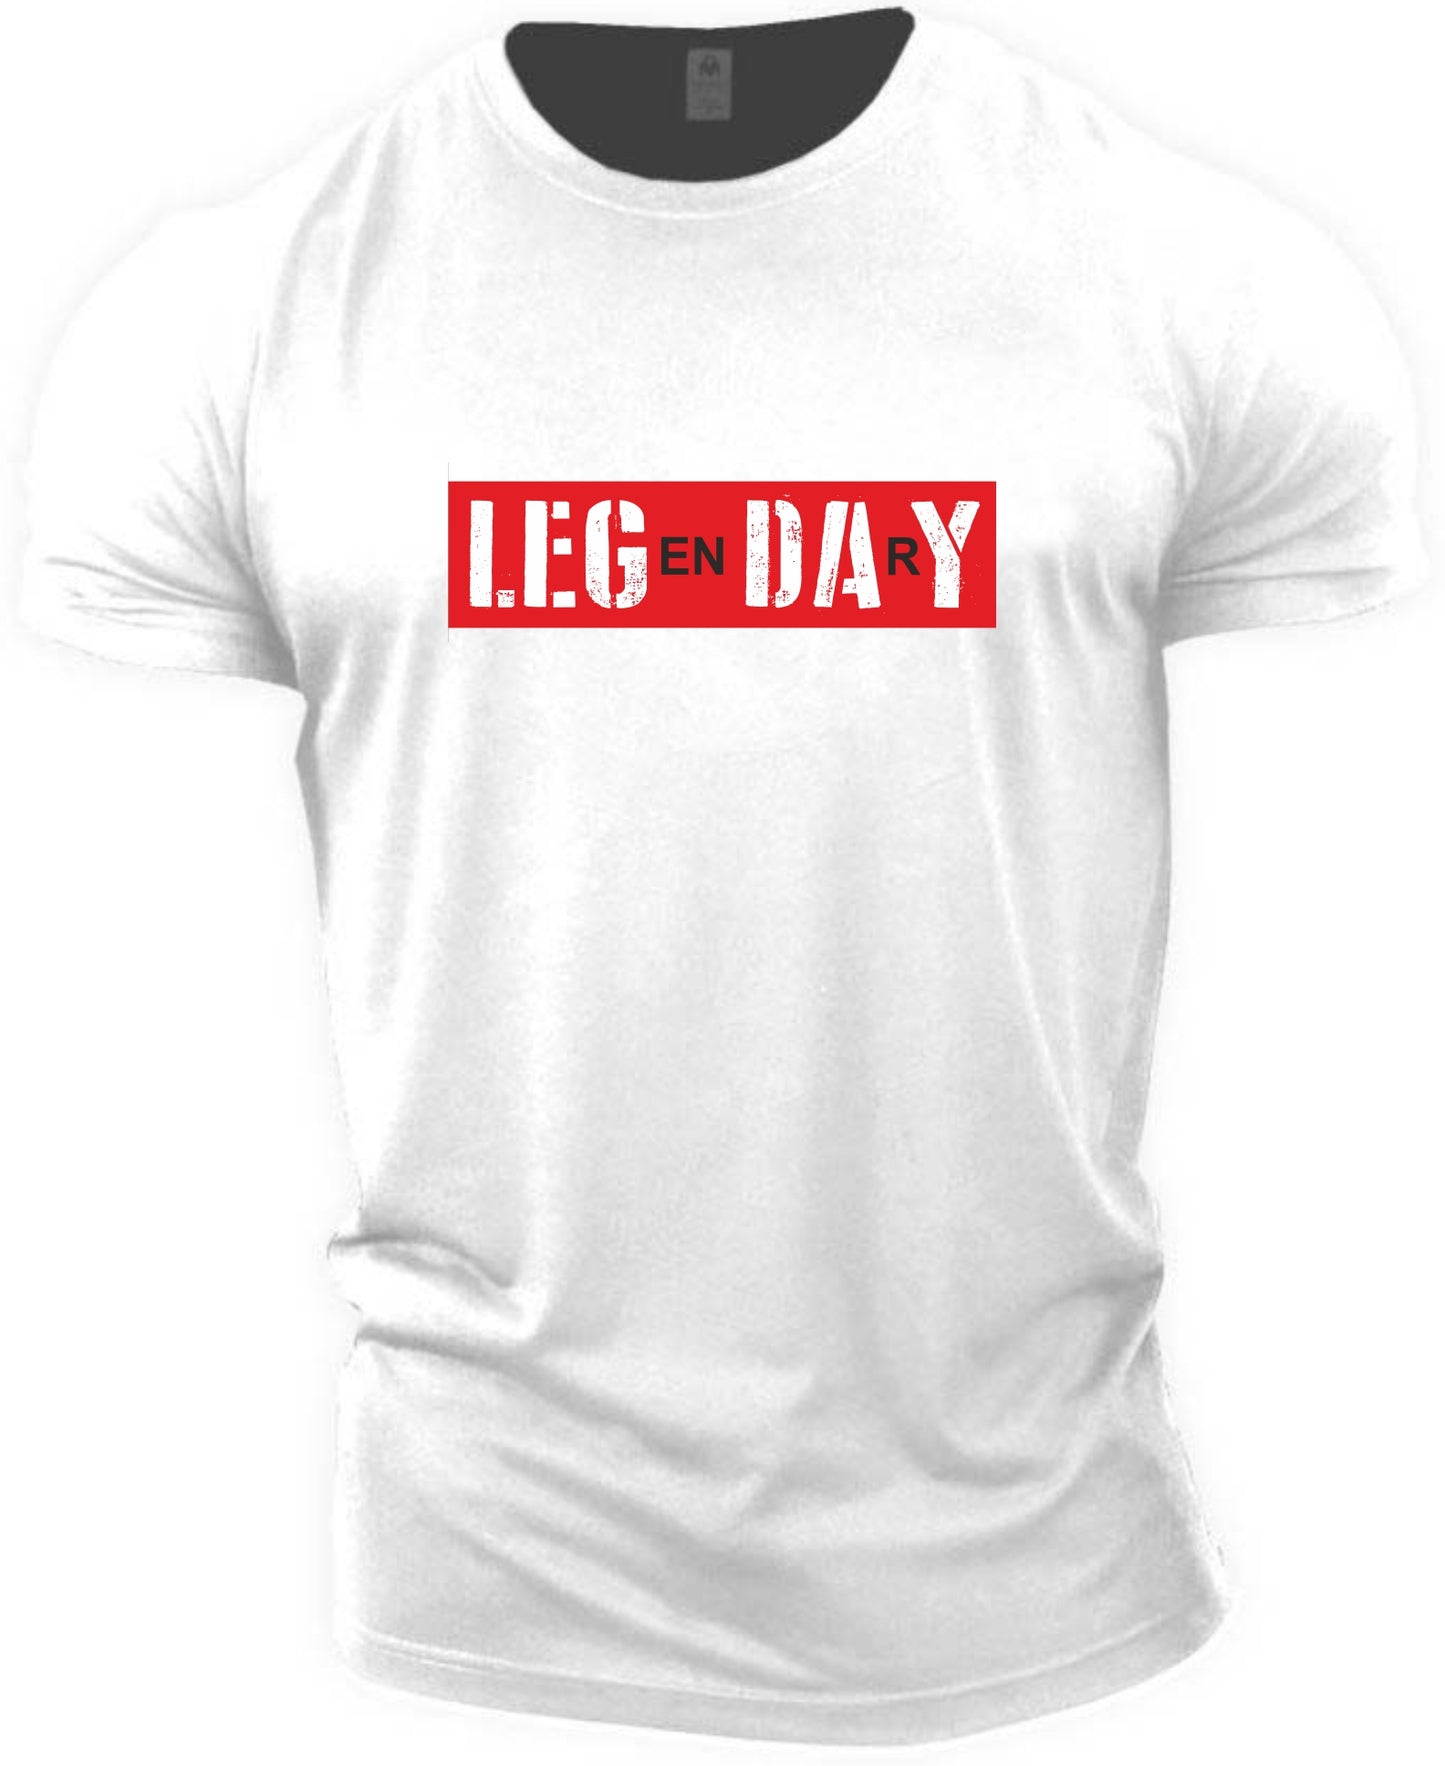 Legendary Fitness T-shirt (Leg day T-shirt)